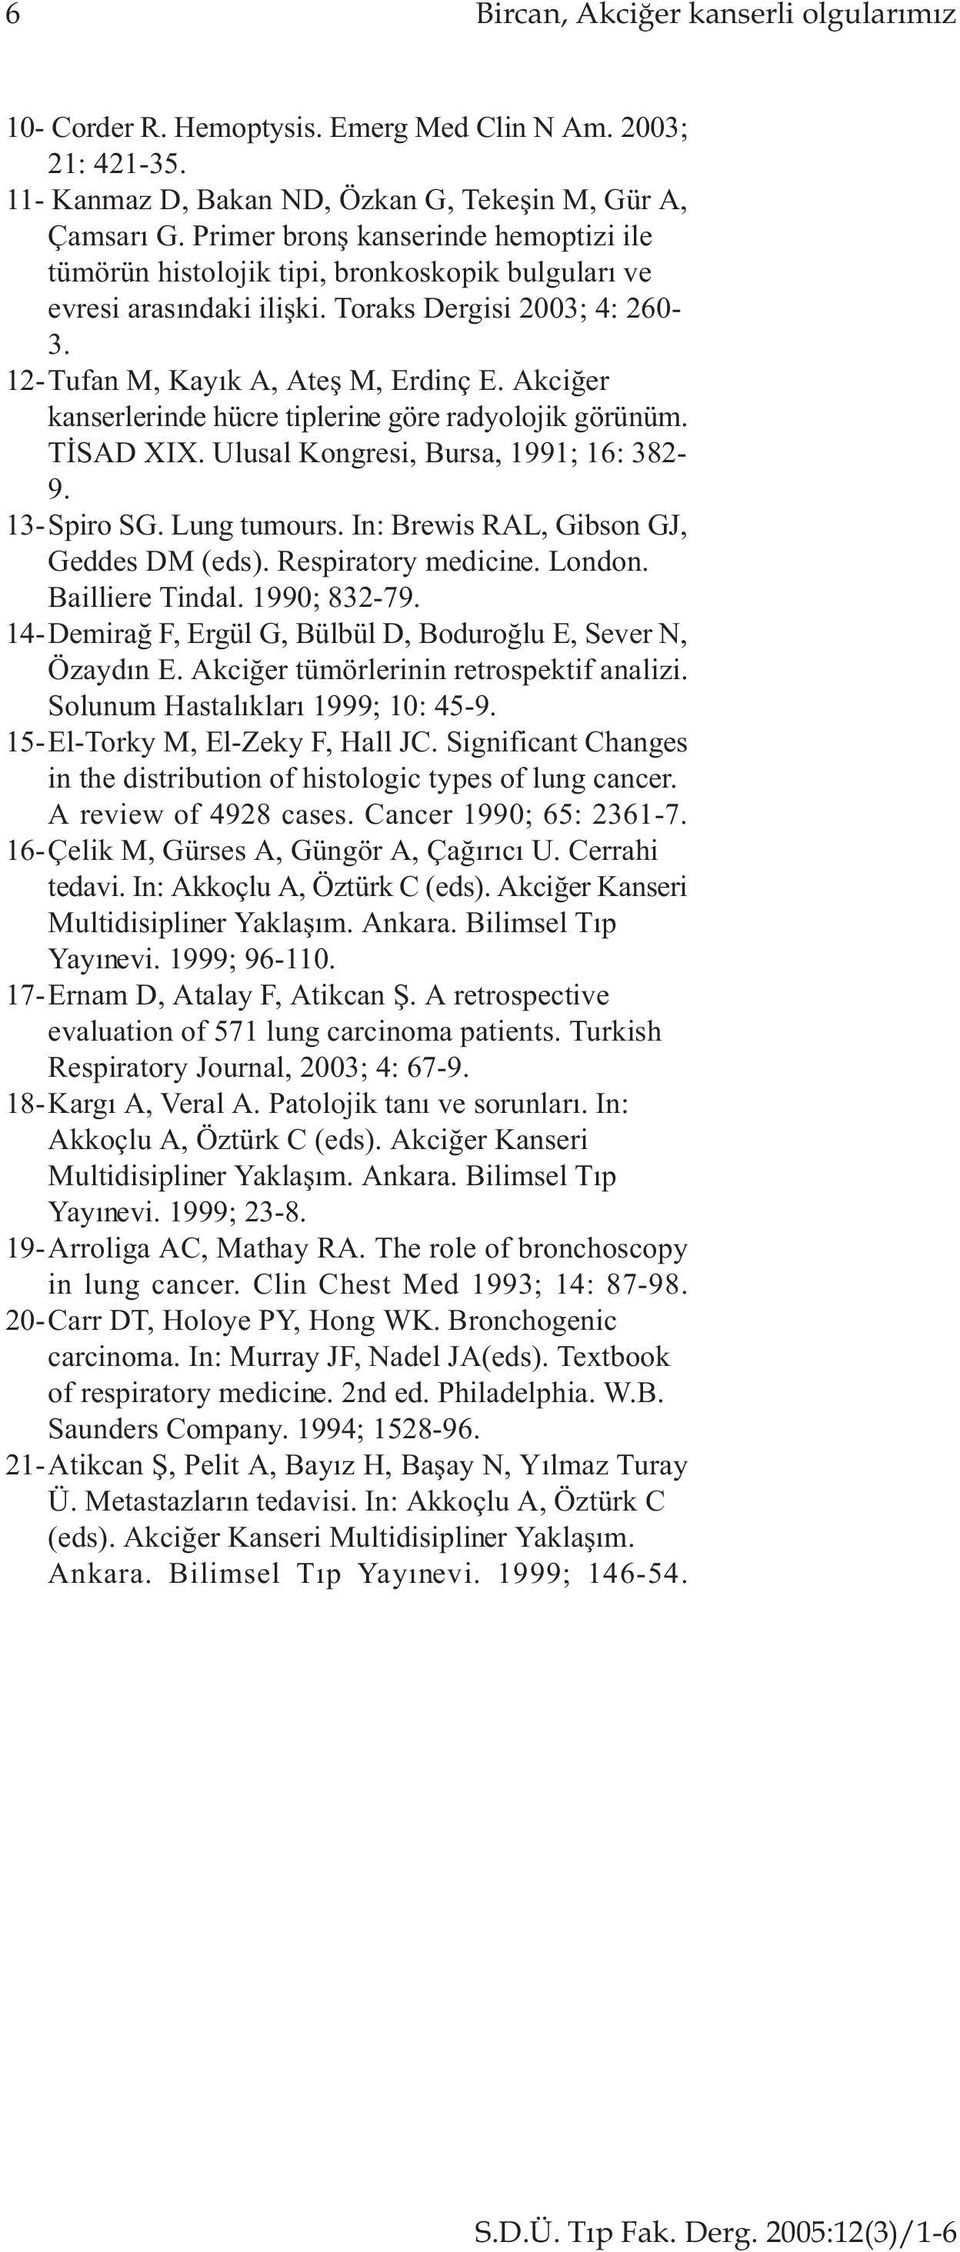 Akciðer kanserlerinde hücre tiplerine göre radyolojik görünüm. TÝSAD XIX. Ulusal Kongresi, Bursa, 1991; 16: 82-9. 1-Spiro SG. Lung tumours. In: Brewis RAL, Gibson GJ, Geddes DM (eds).